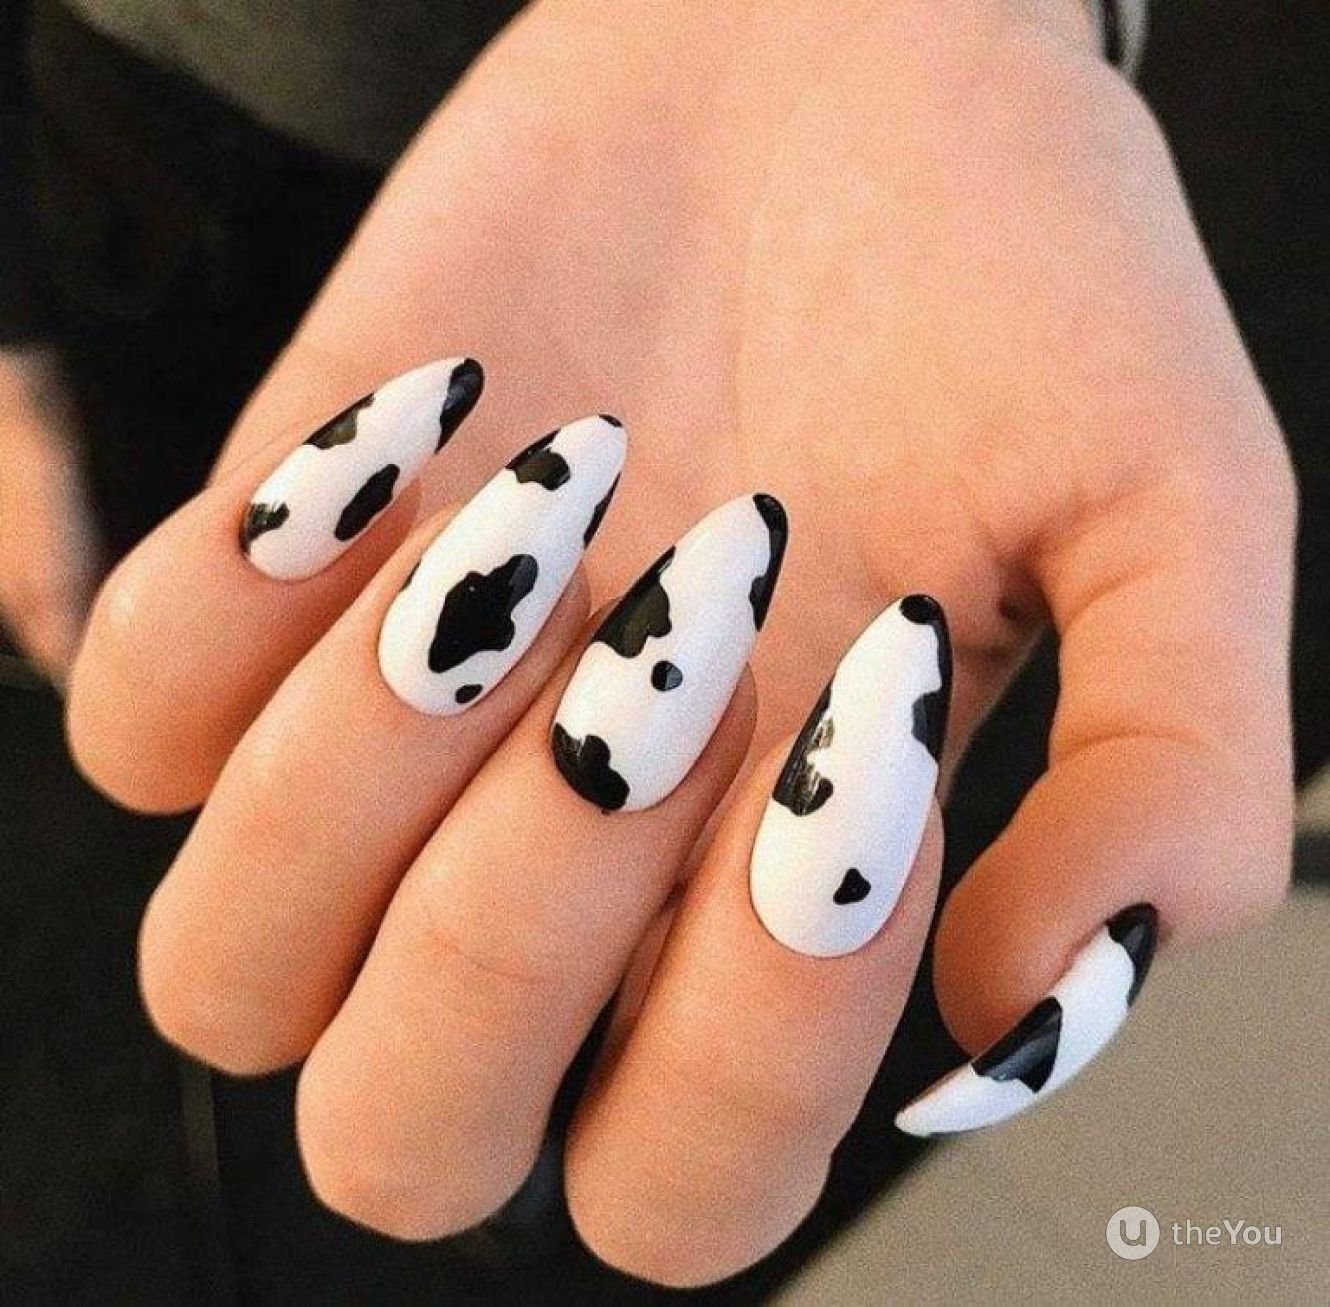 Дизайн коровка. Ногти в стиле коровы. Маникюр с коровьим принтом. Маникюр дизайн корова. Ногти коровка.